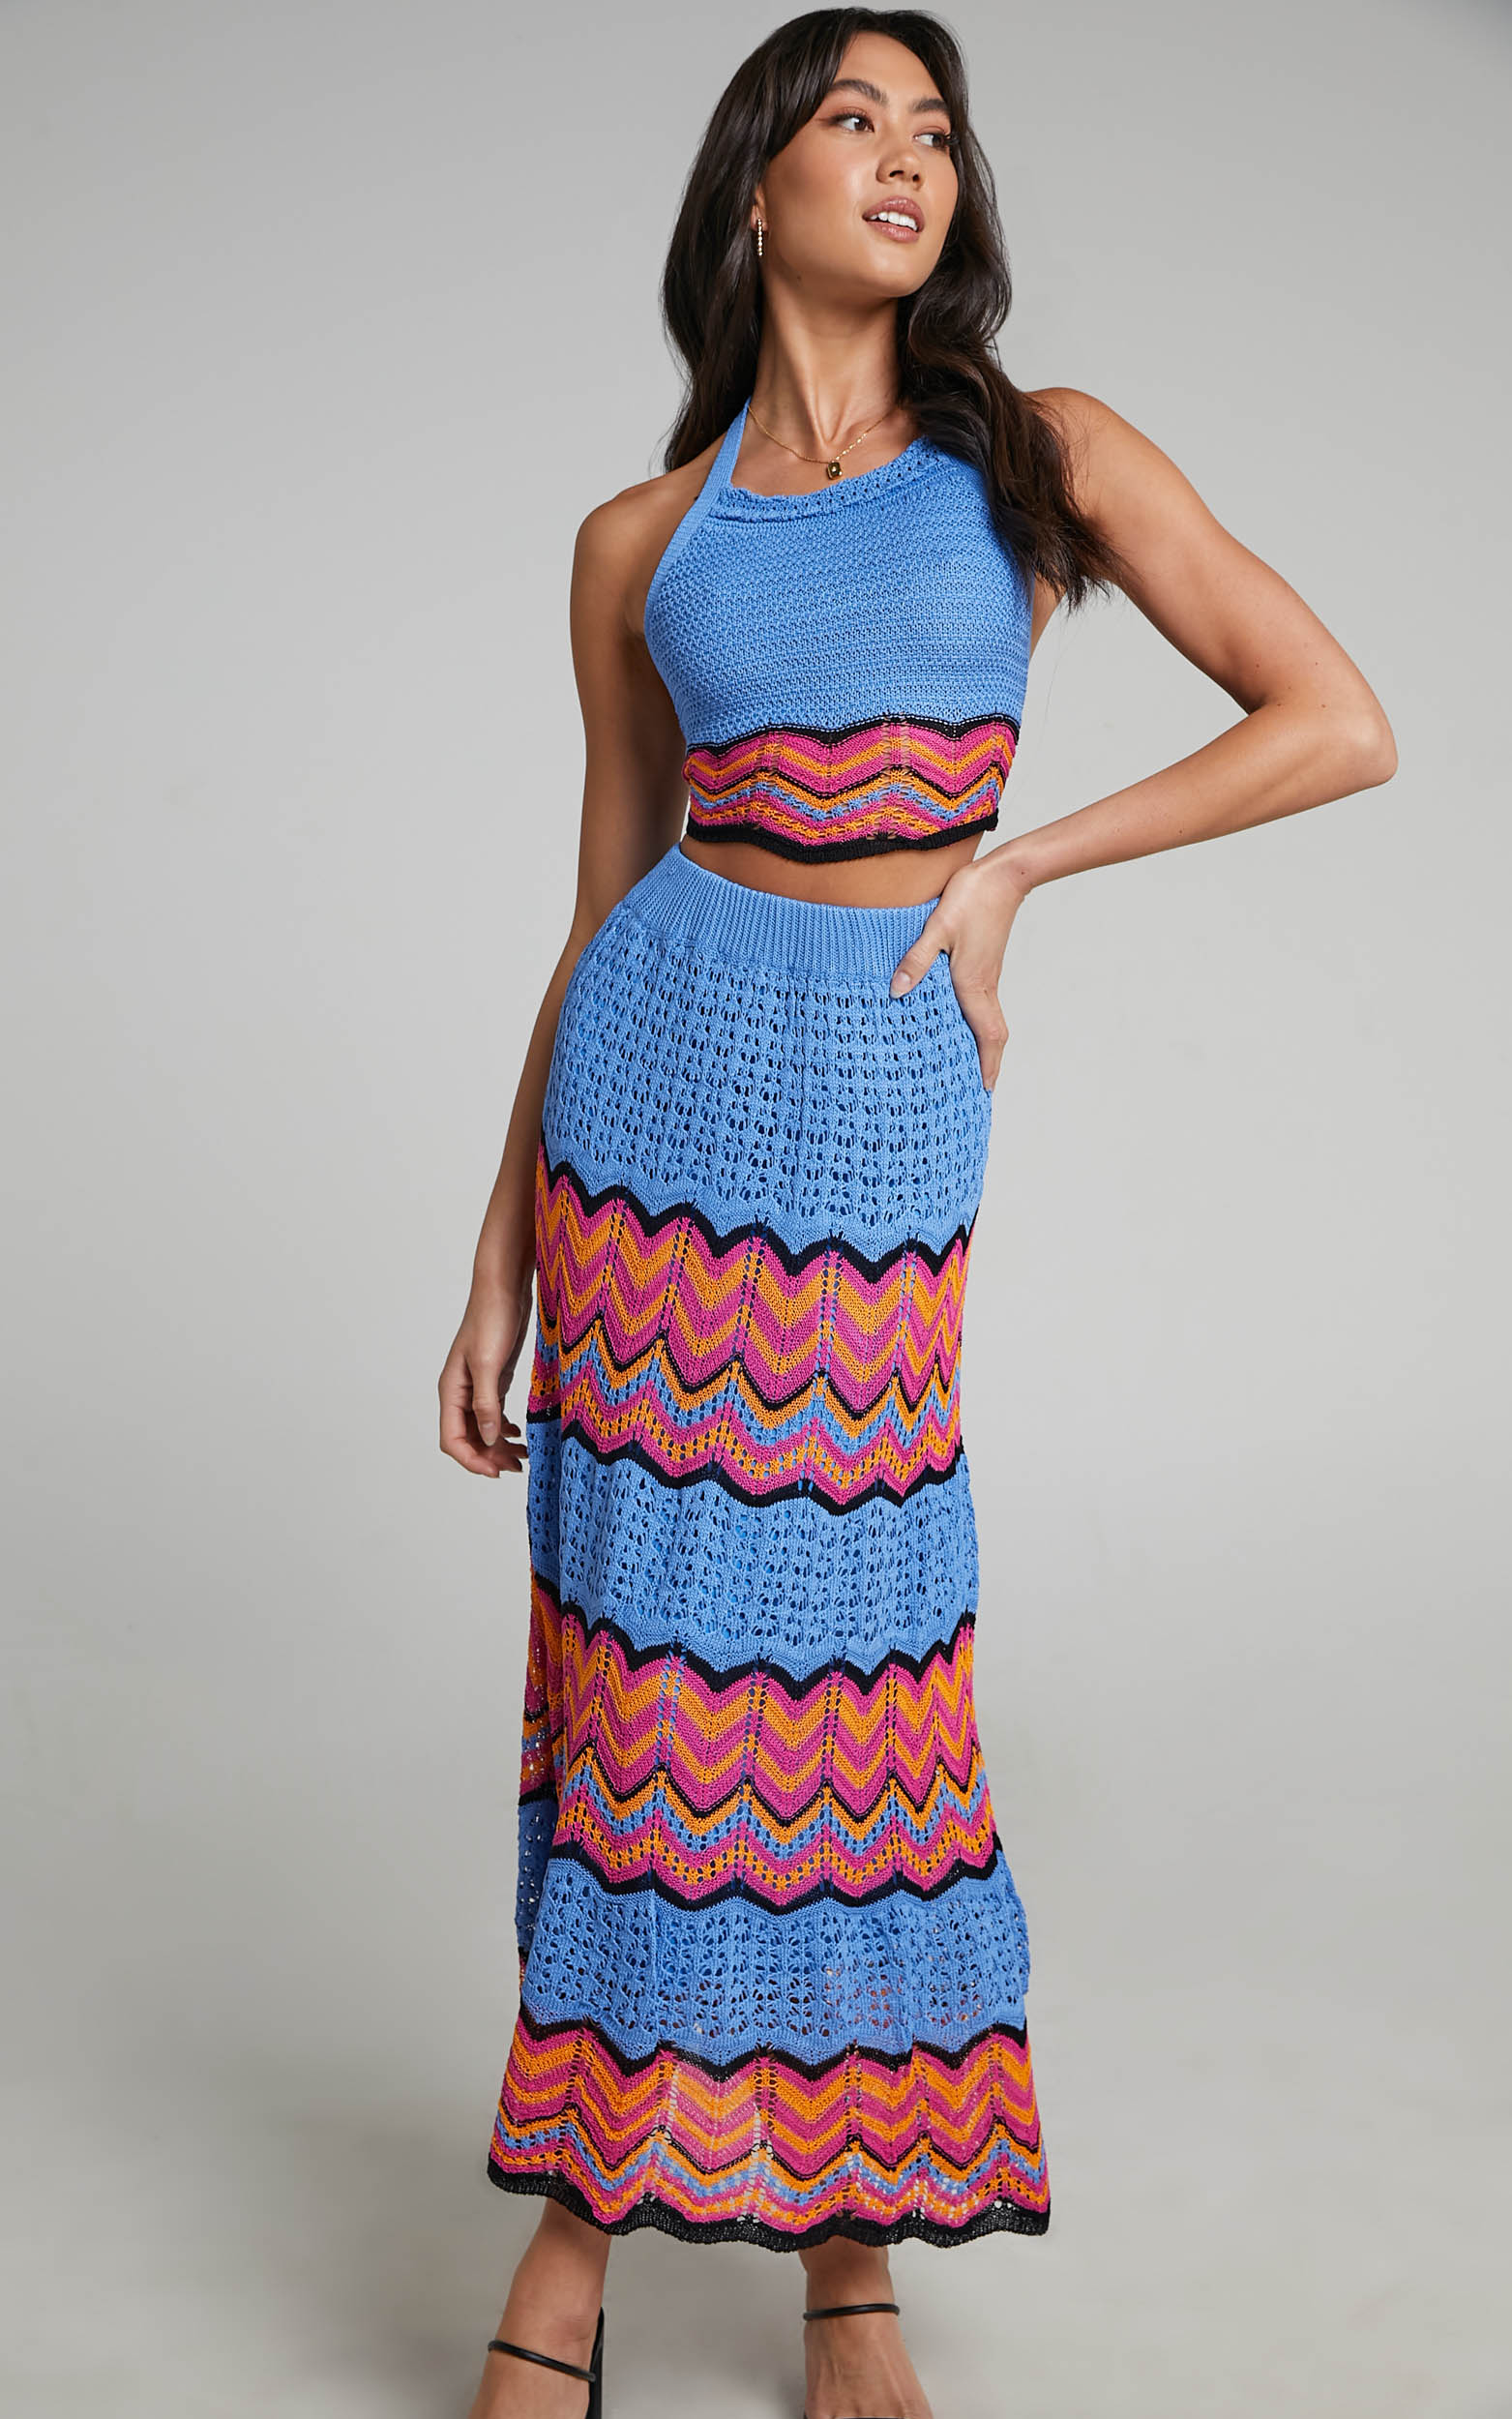 thommy-crochet-skirt-in-royal-blue